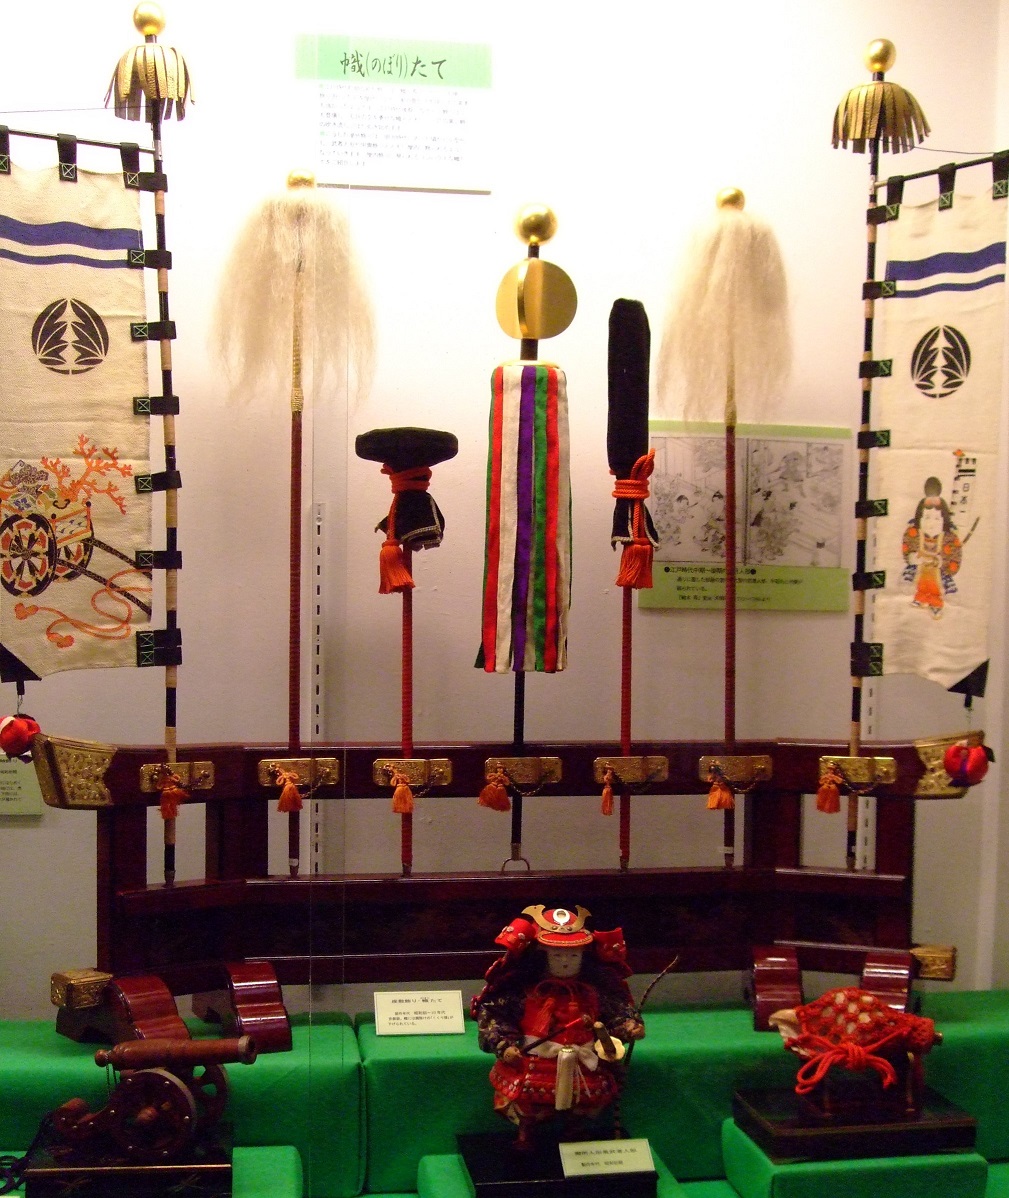 端午の座敷幟」 | 日本玩具博物館